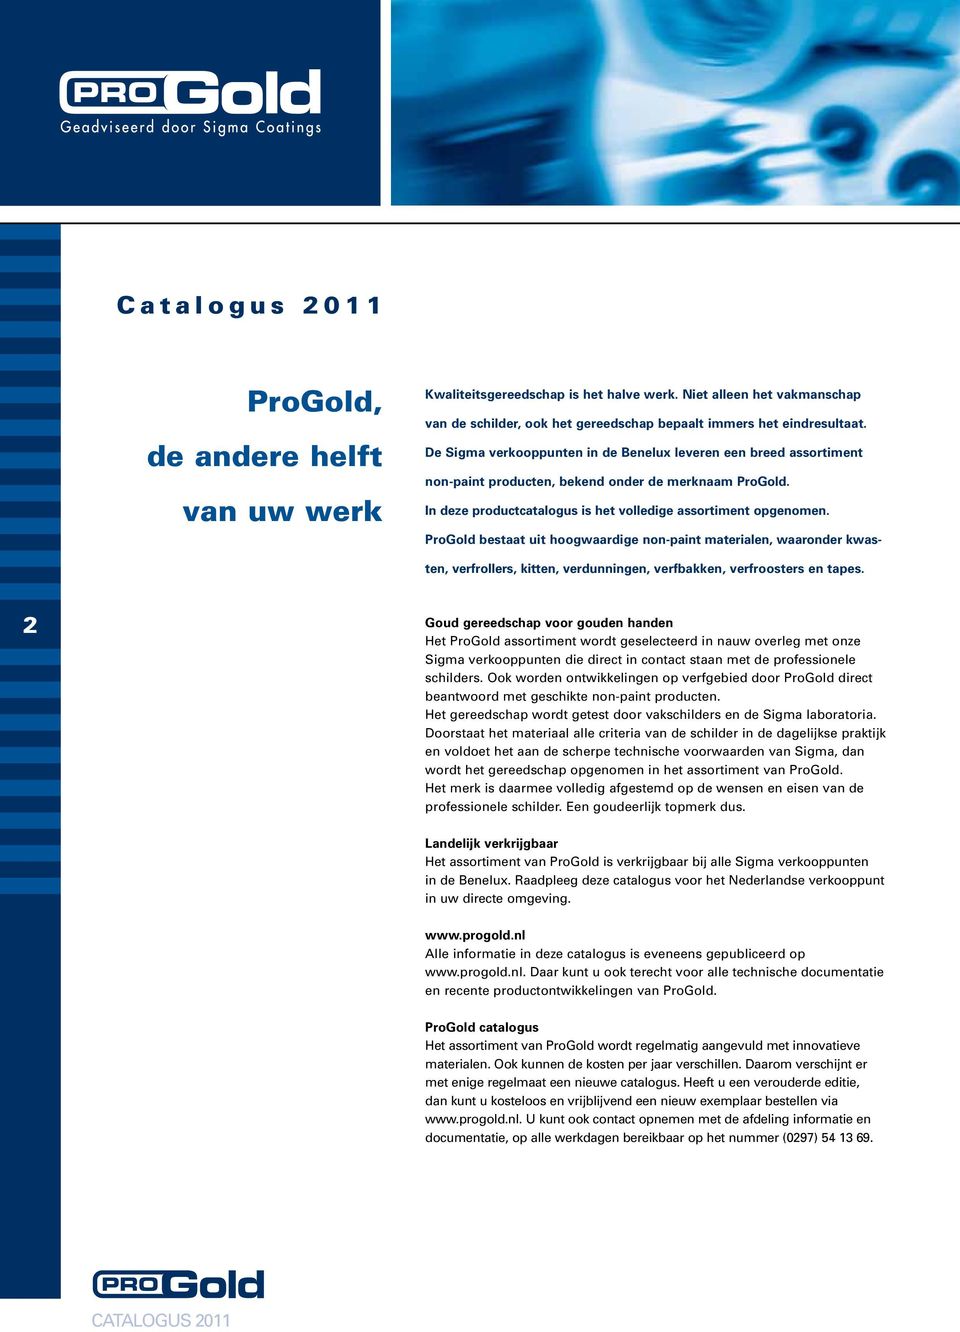 De Sigma verkooppunten in de Benelux leveren een breed assortiment non-paint producten, bekend onder de merknaam ProGold. In deze productcatalogus is het volledige assortiment opgenomen.